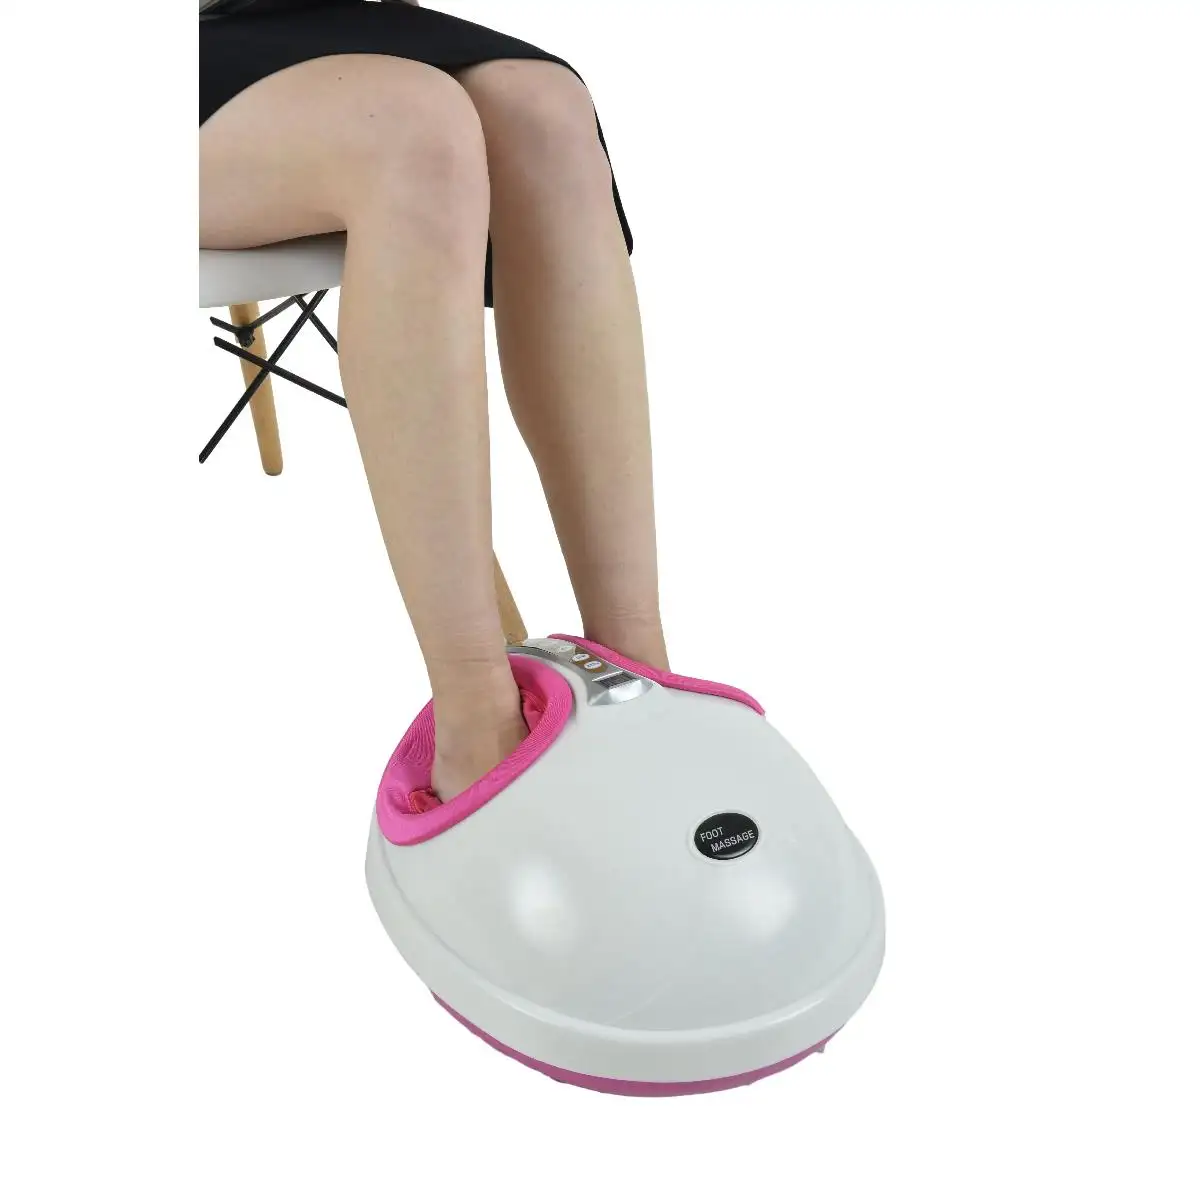 Werkseitig angepasste elektrische warme Shiatsu-Fuß-und Waden massage gerät mit Heiz funktion